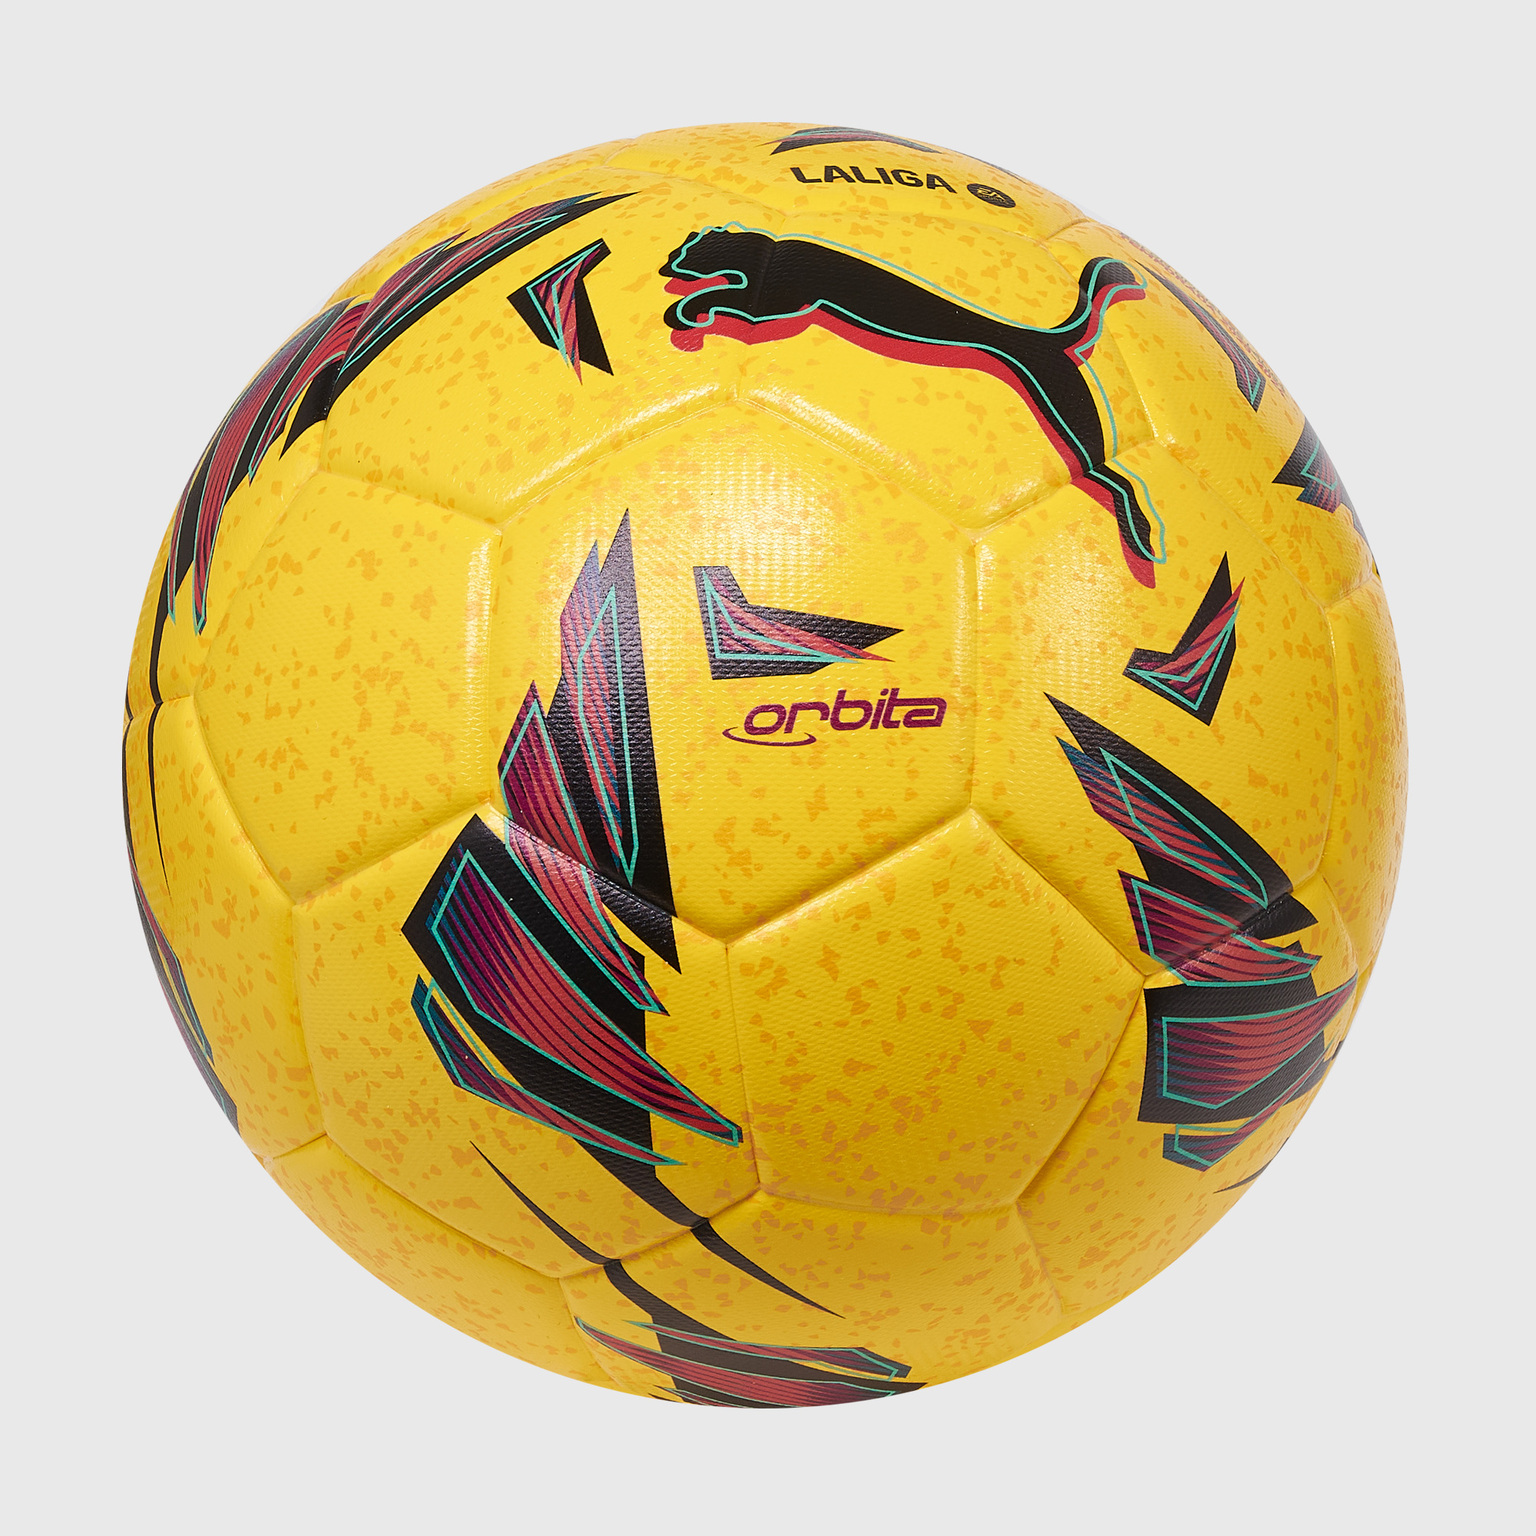 Футбольный мяч Puma Orbita Laliga 1 08410702